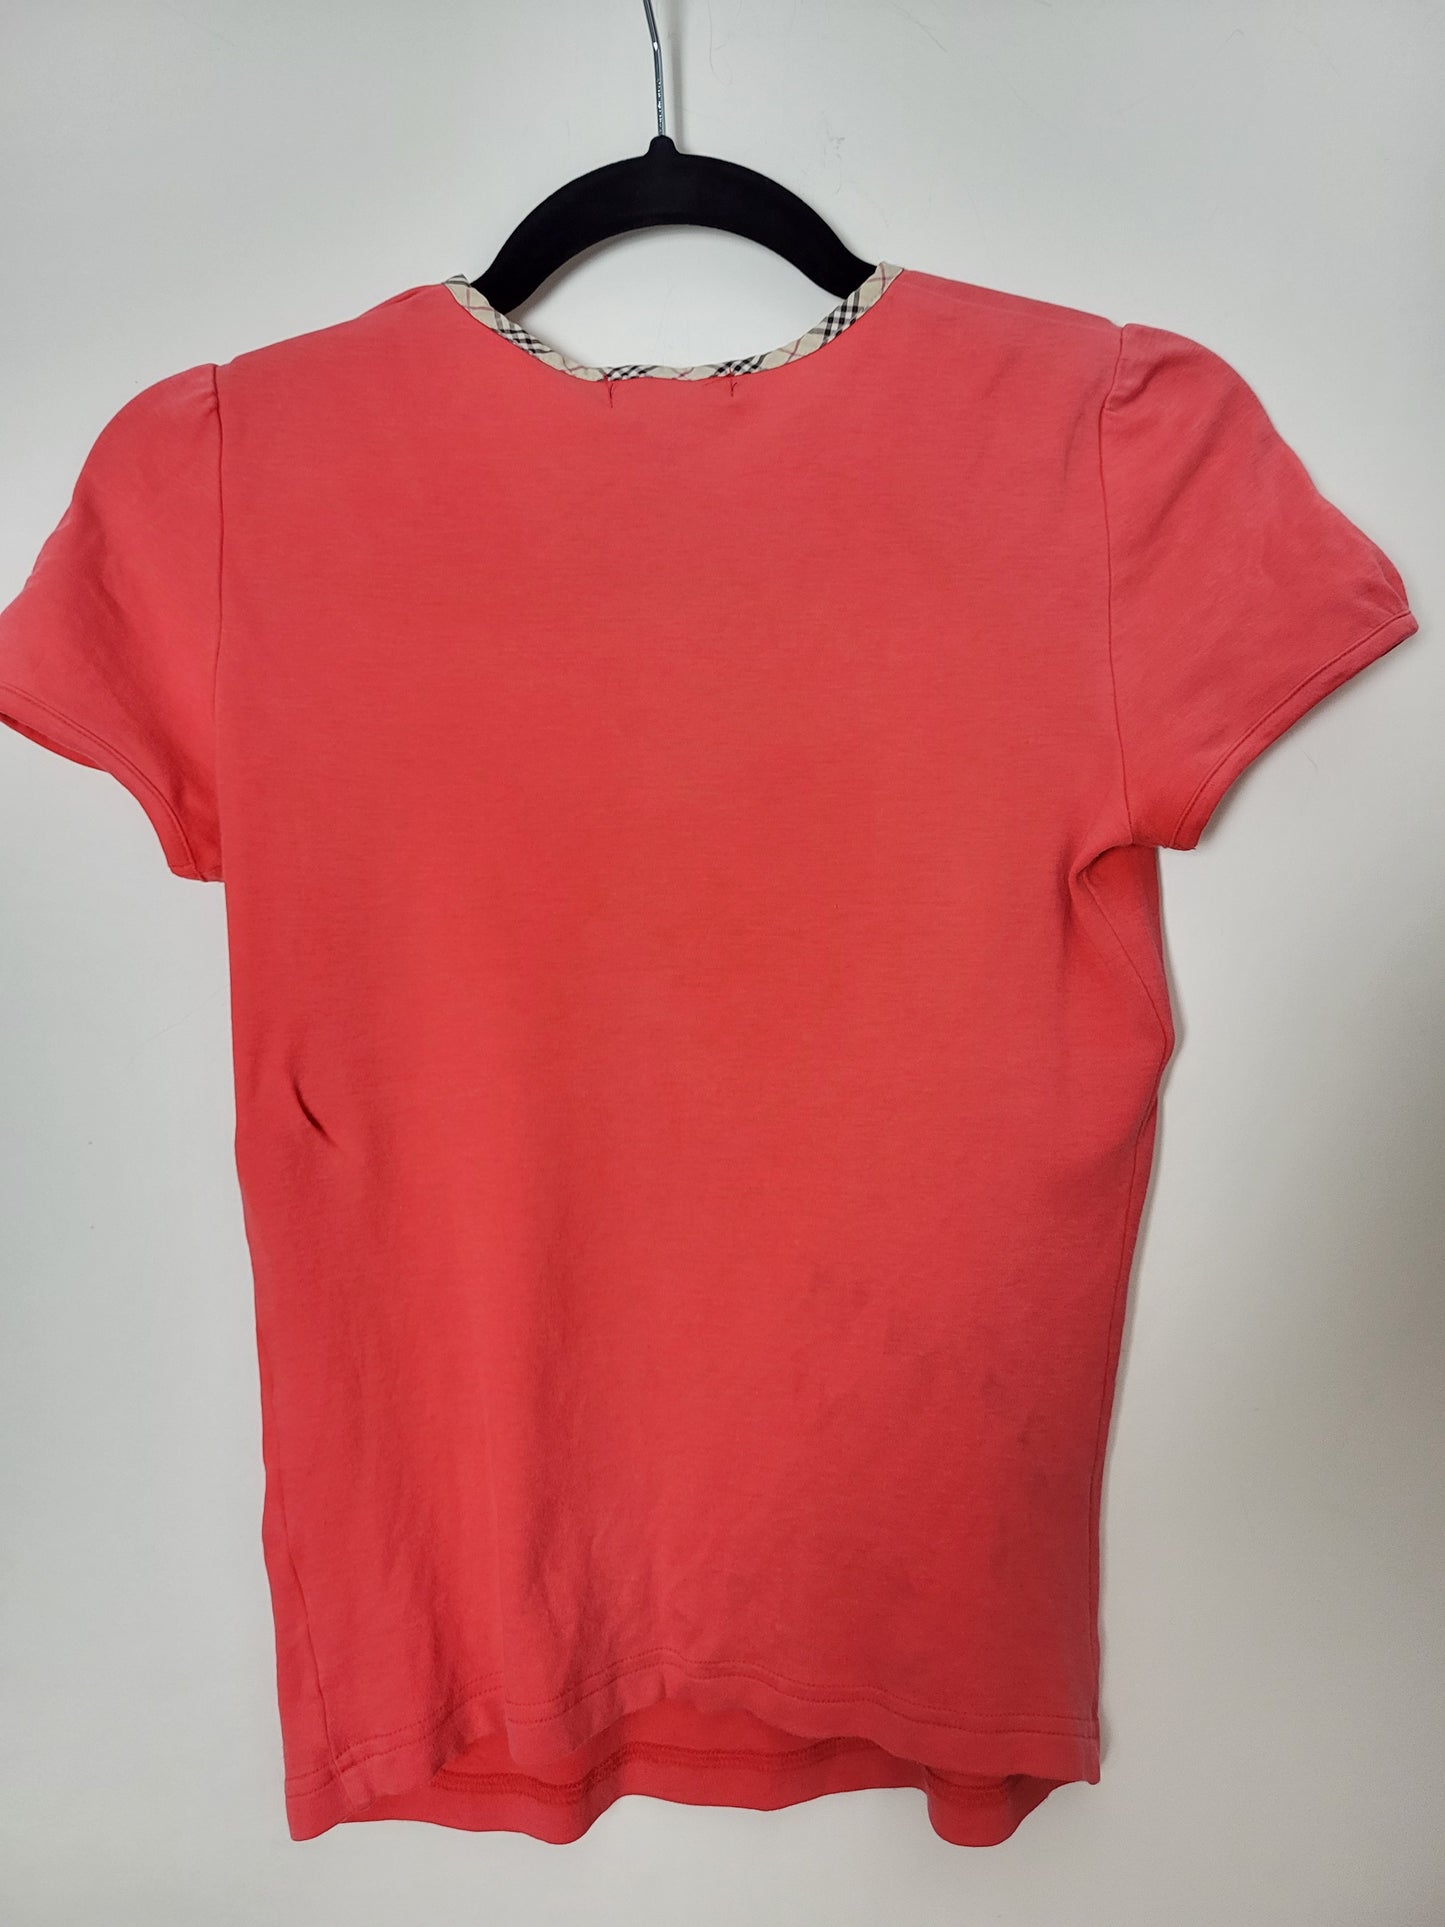 VINTAGE BURBERRY - Shirt - Klassisch - Rot - Kinder - M